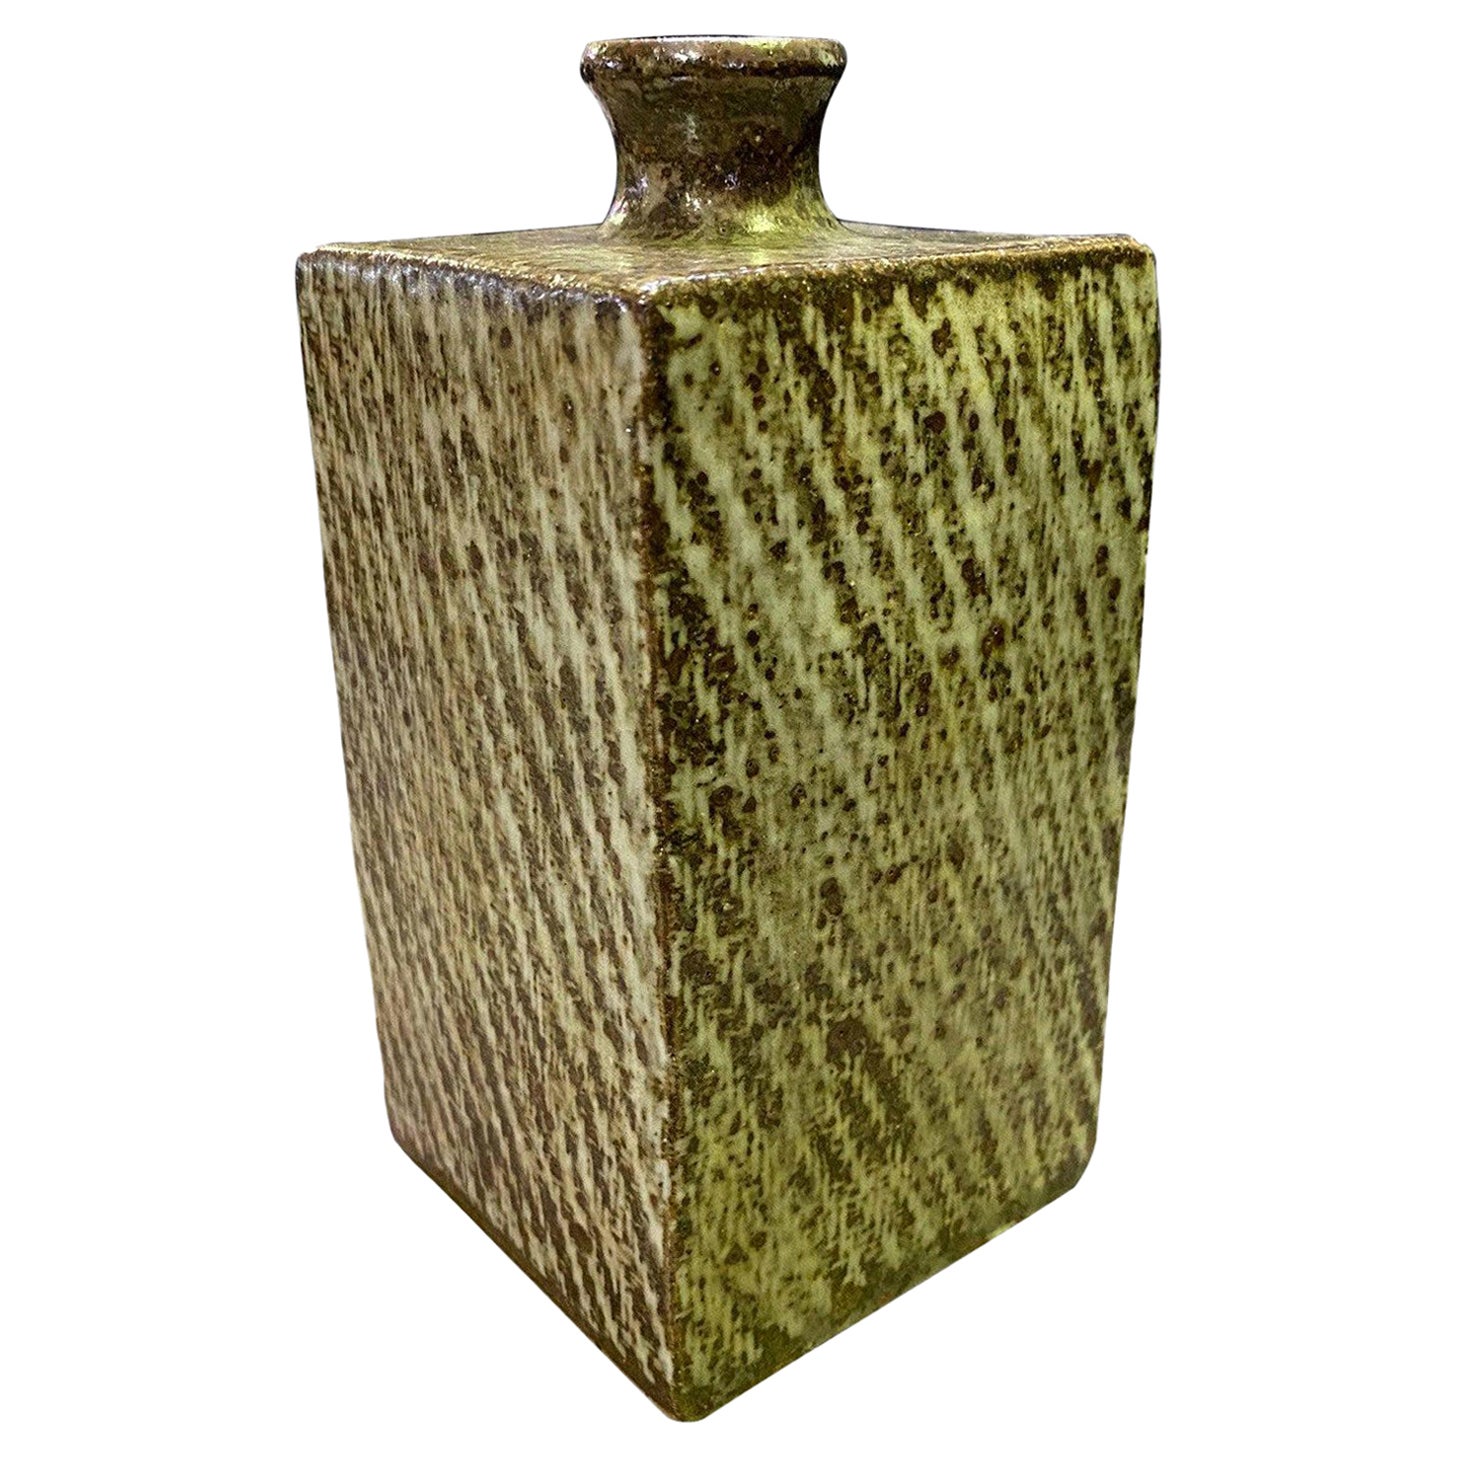 Tatsuzo Shimaoka Signed Japanese Glazed Rope Inlay Pottery Ceramic Vase with Box